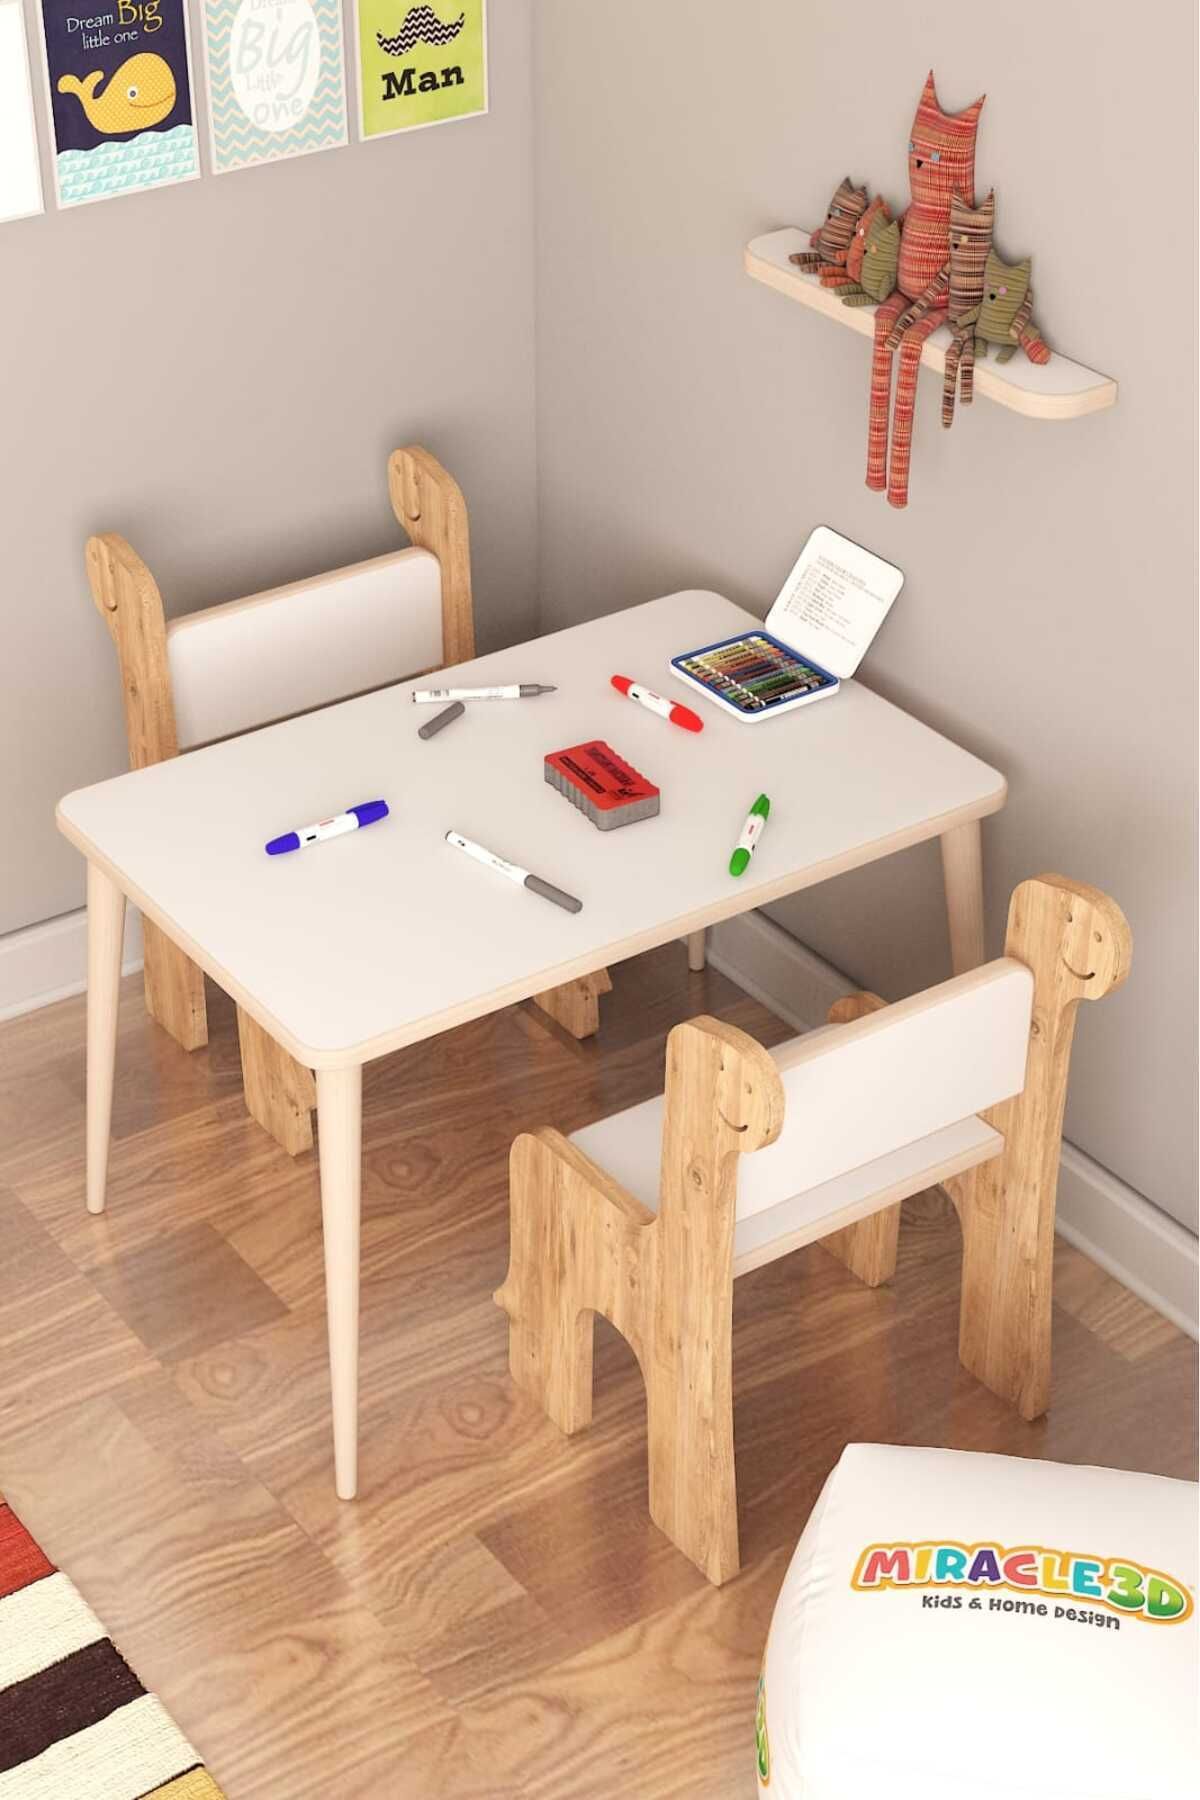 MİRACLE 3D Çocuk Oyun Etkinlik Çalışma Masası Ve Sandalye, Aktivite Masası